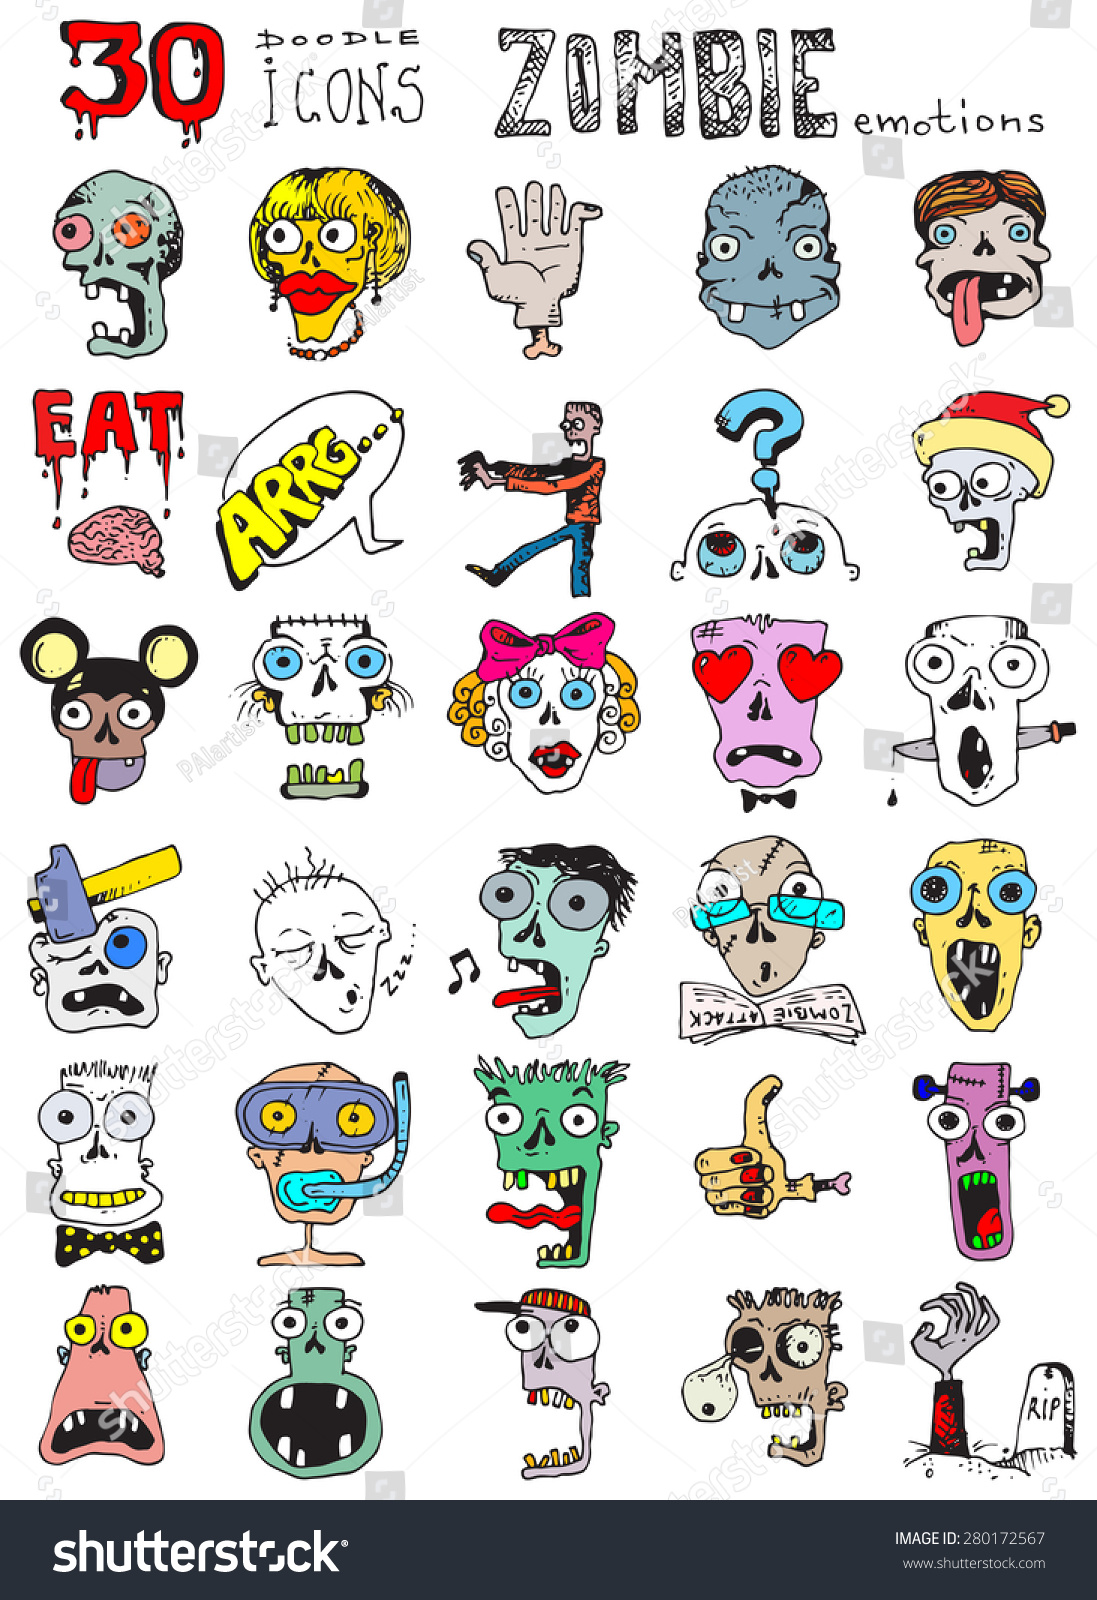 Thirty Doodle Icons Illustration ZOMBIE Horror Stock Illustration